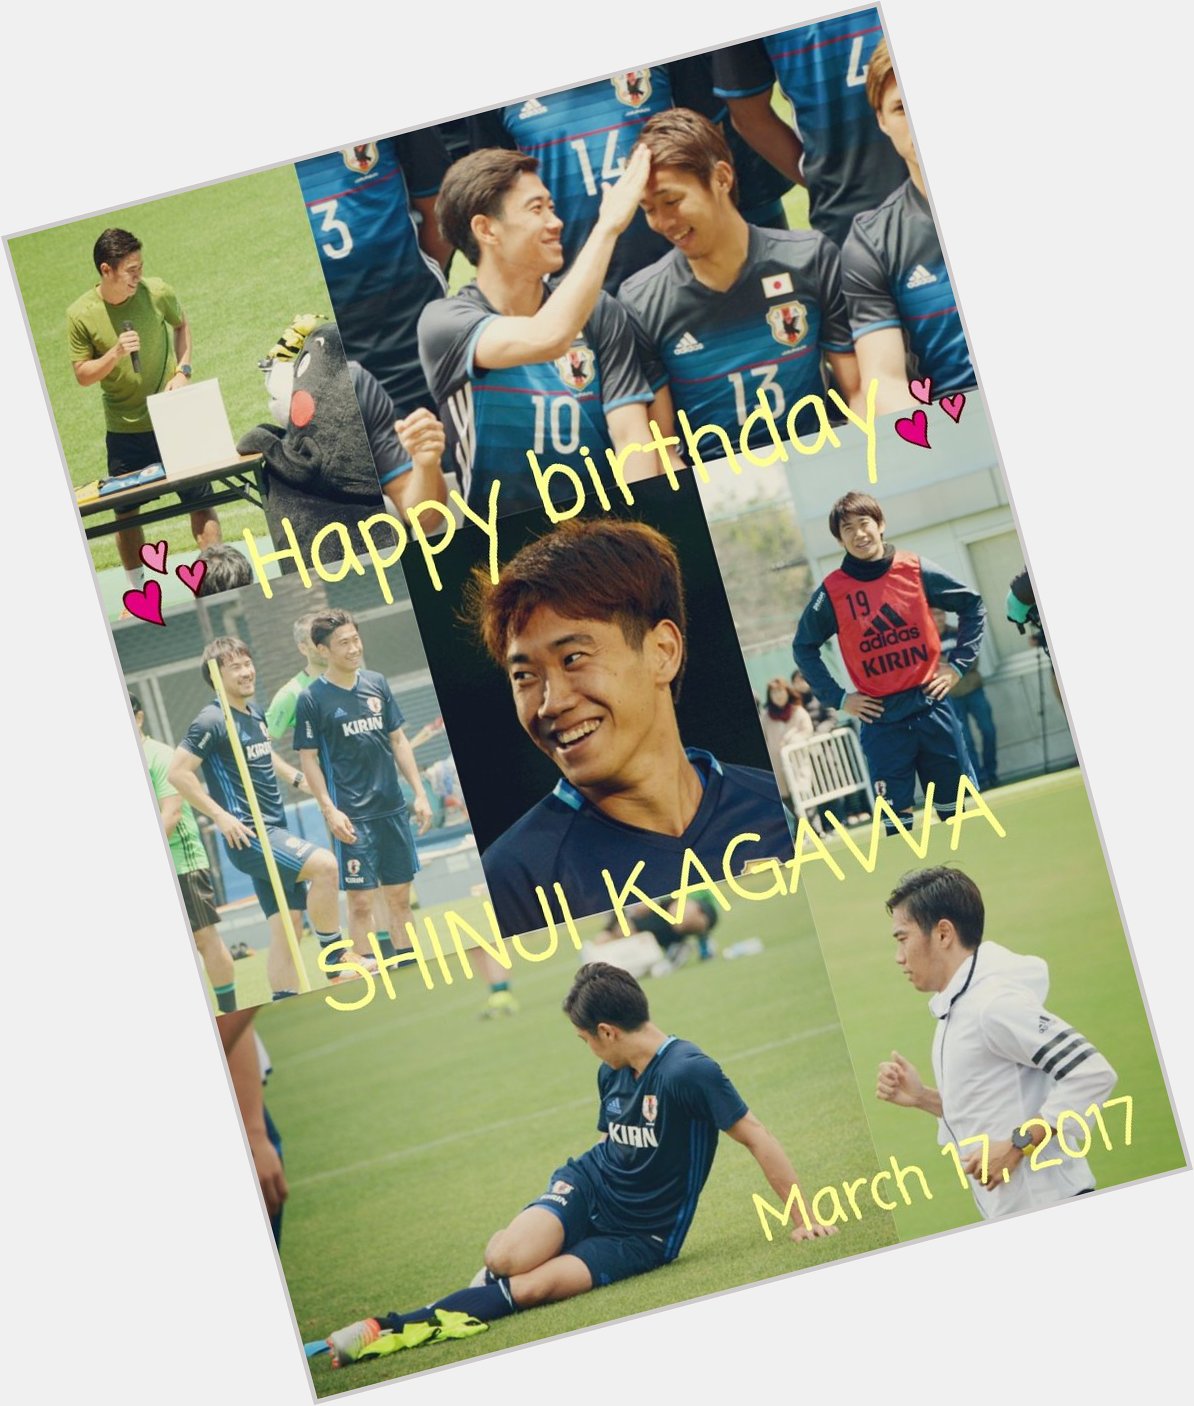   Happy birthday Shinji Kagawa                       